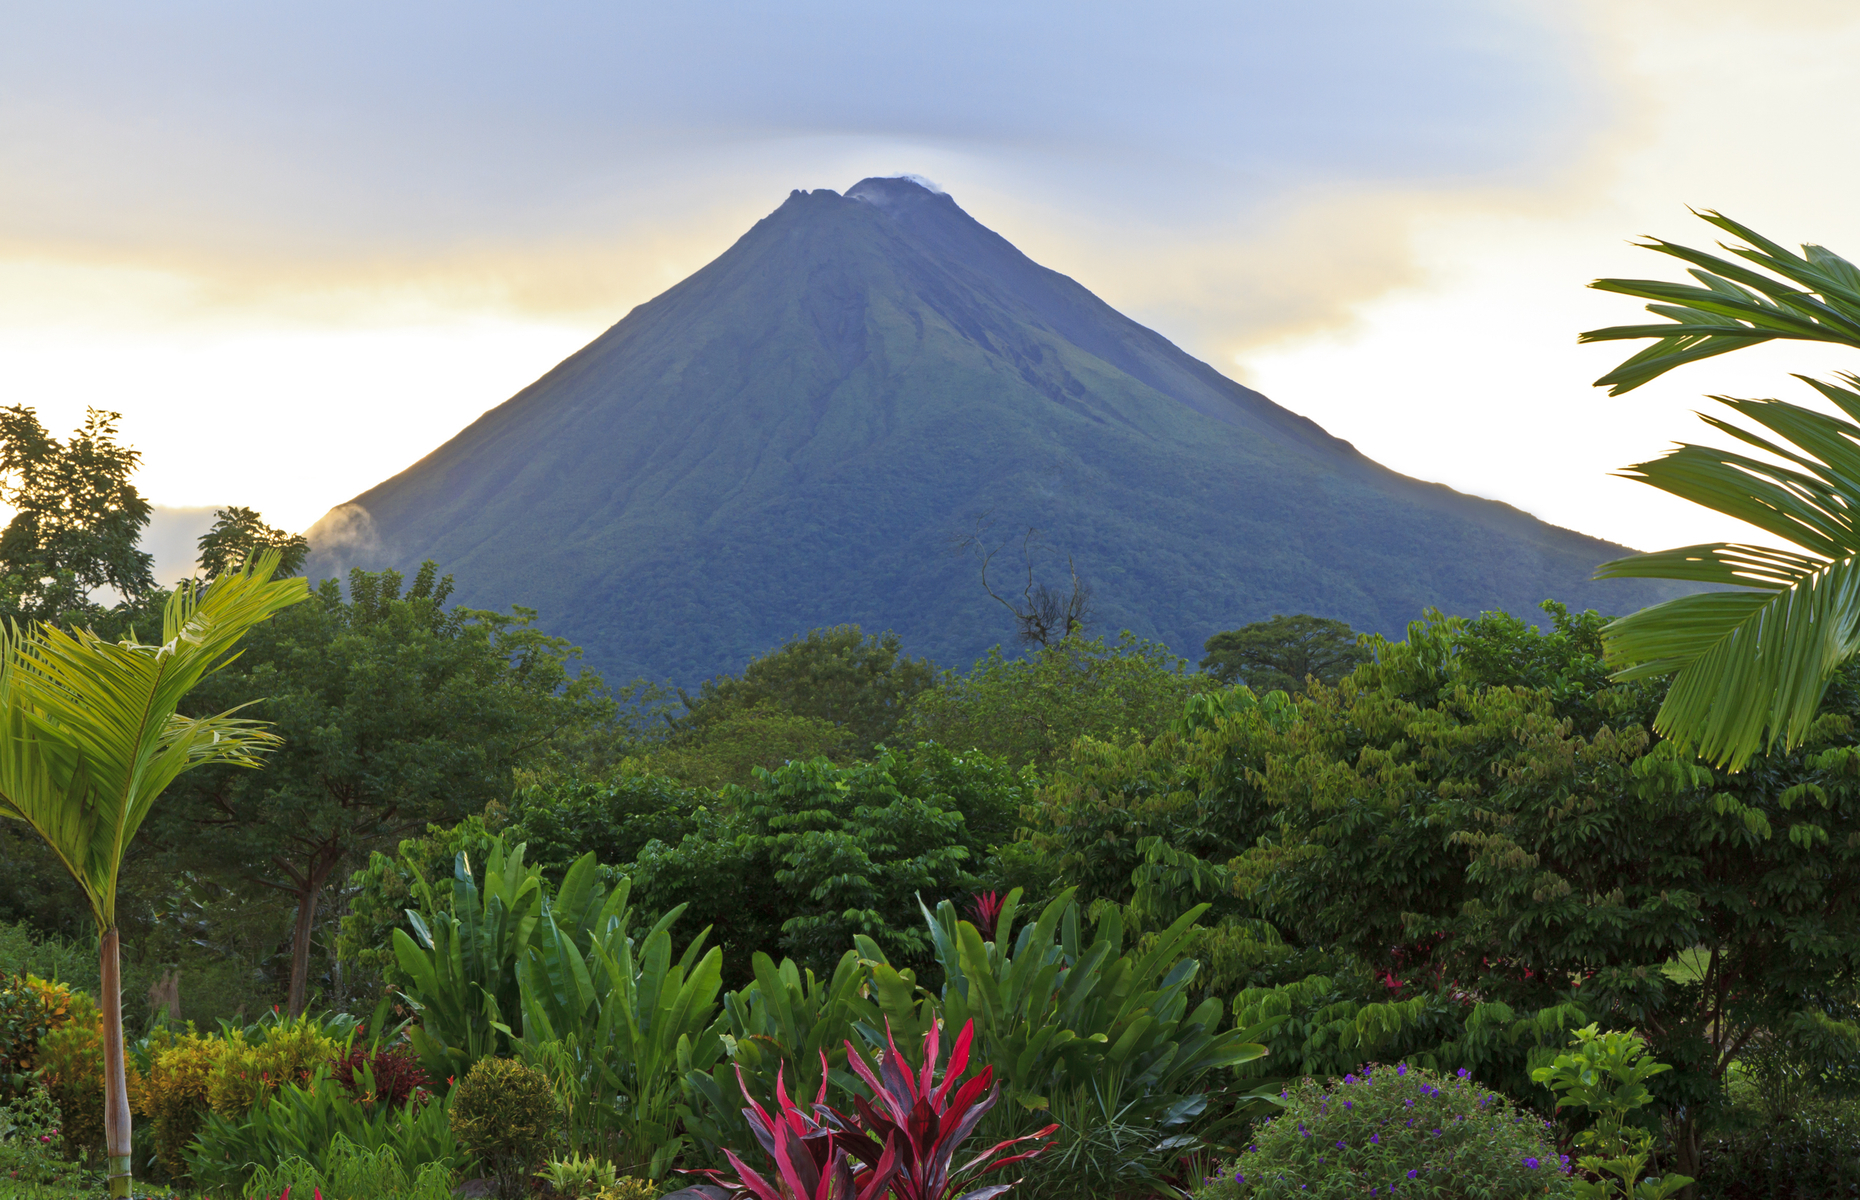 Forêts tropicales, plages magnifiques, faune et flore diversifiées, activités passionnantes... Le Costa Rica a énormément à offrir aux touristes. Ce pays est considéré comme l’une des principales <a href="https://www.costarica-voyage.com/guide-pays/ecotourisme-costa-rica" rel="noreferrer noopener">destinations écotouristiques</a>, et pas moins de 25% de son territoire est protégé par un statut de parc national, de réserve ou de sanctuaire pour la faune et la flore. En 2024, une poignée de nouveaux hôtels ouvriront leurs portes, dont le très sélect Ritz-Carlton Reserve, mais il existe une multitude <a href="https://voyagesarabais.com/destinations/costa-rica" rel="noreferrer noopener">d’hôtels de charme et de formules tout compris</a> pour tous les types de voyageurs.